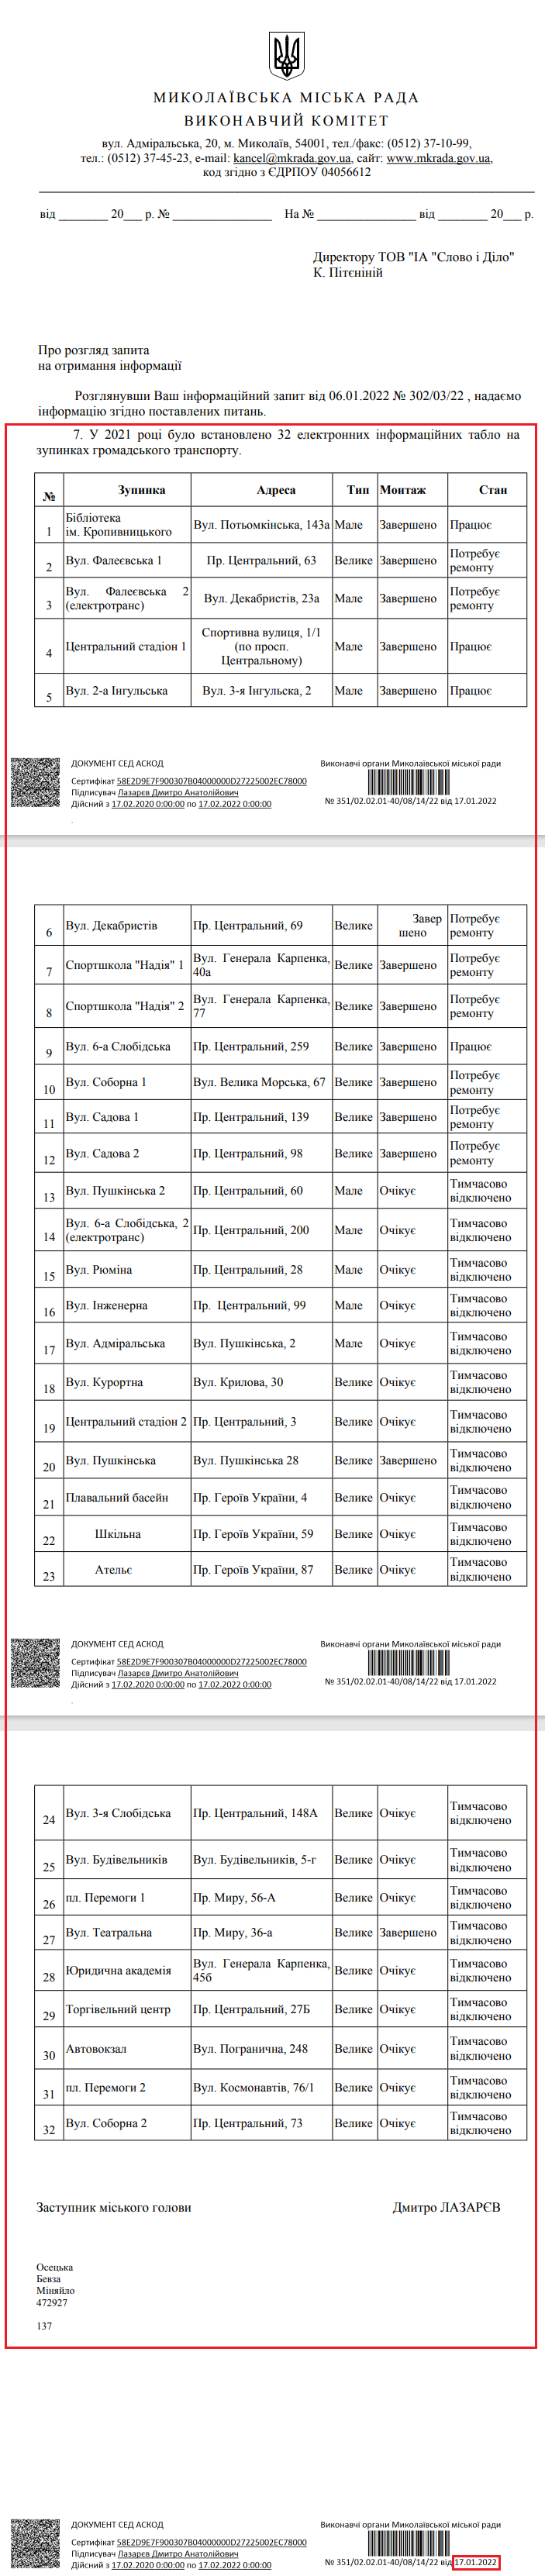 Лист Миколаївської міської ради від 17 січня 2022 року